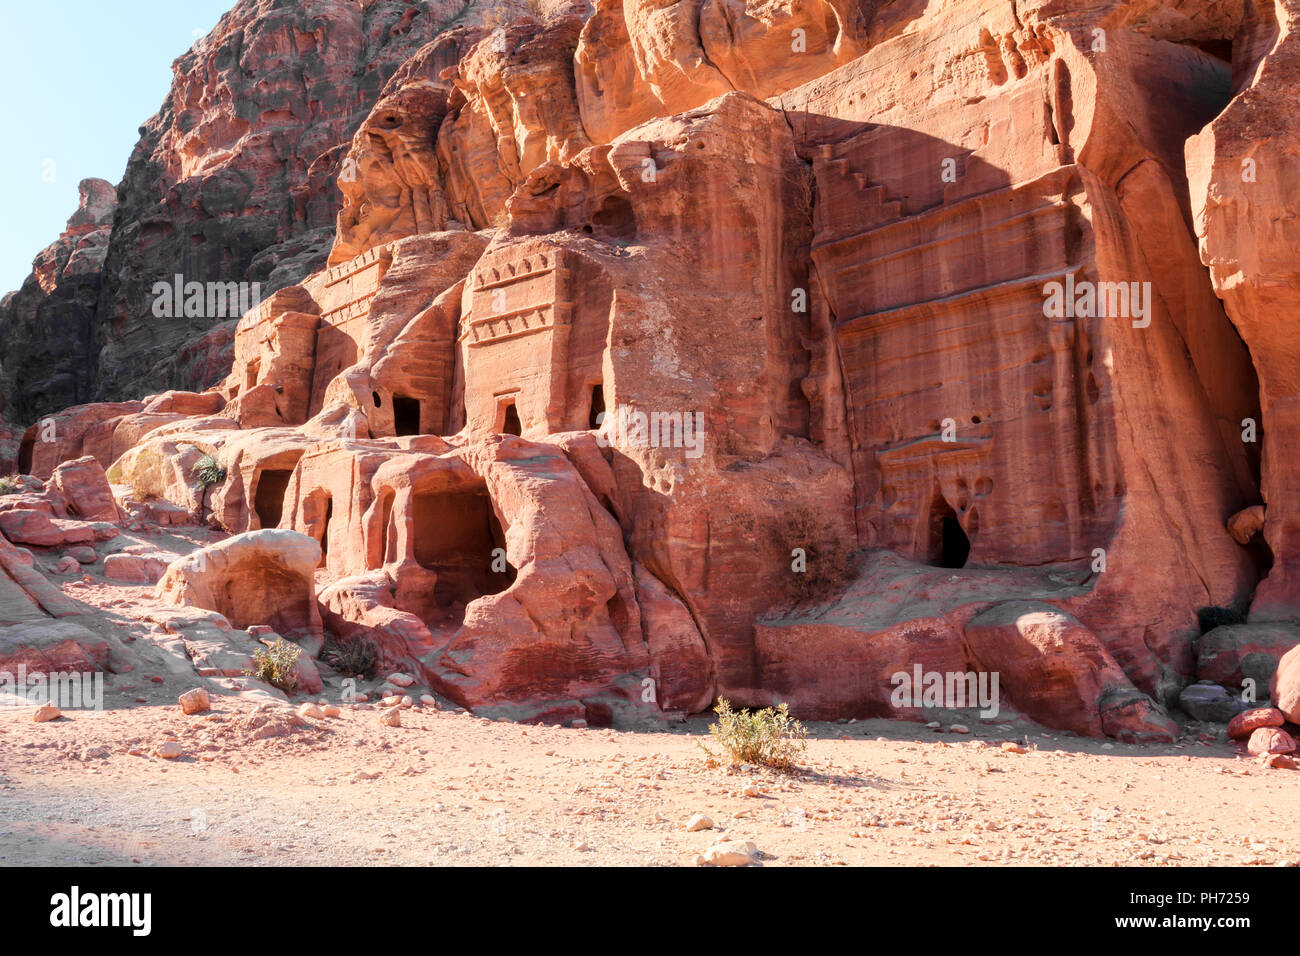 Tumbas en la ciudad perdida de Petra. Foto de stock